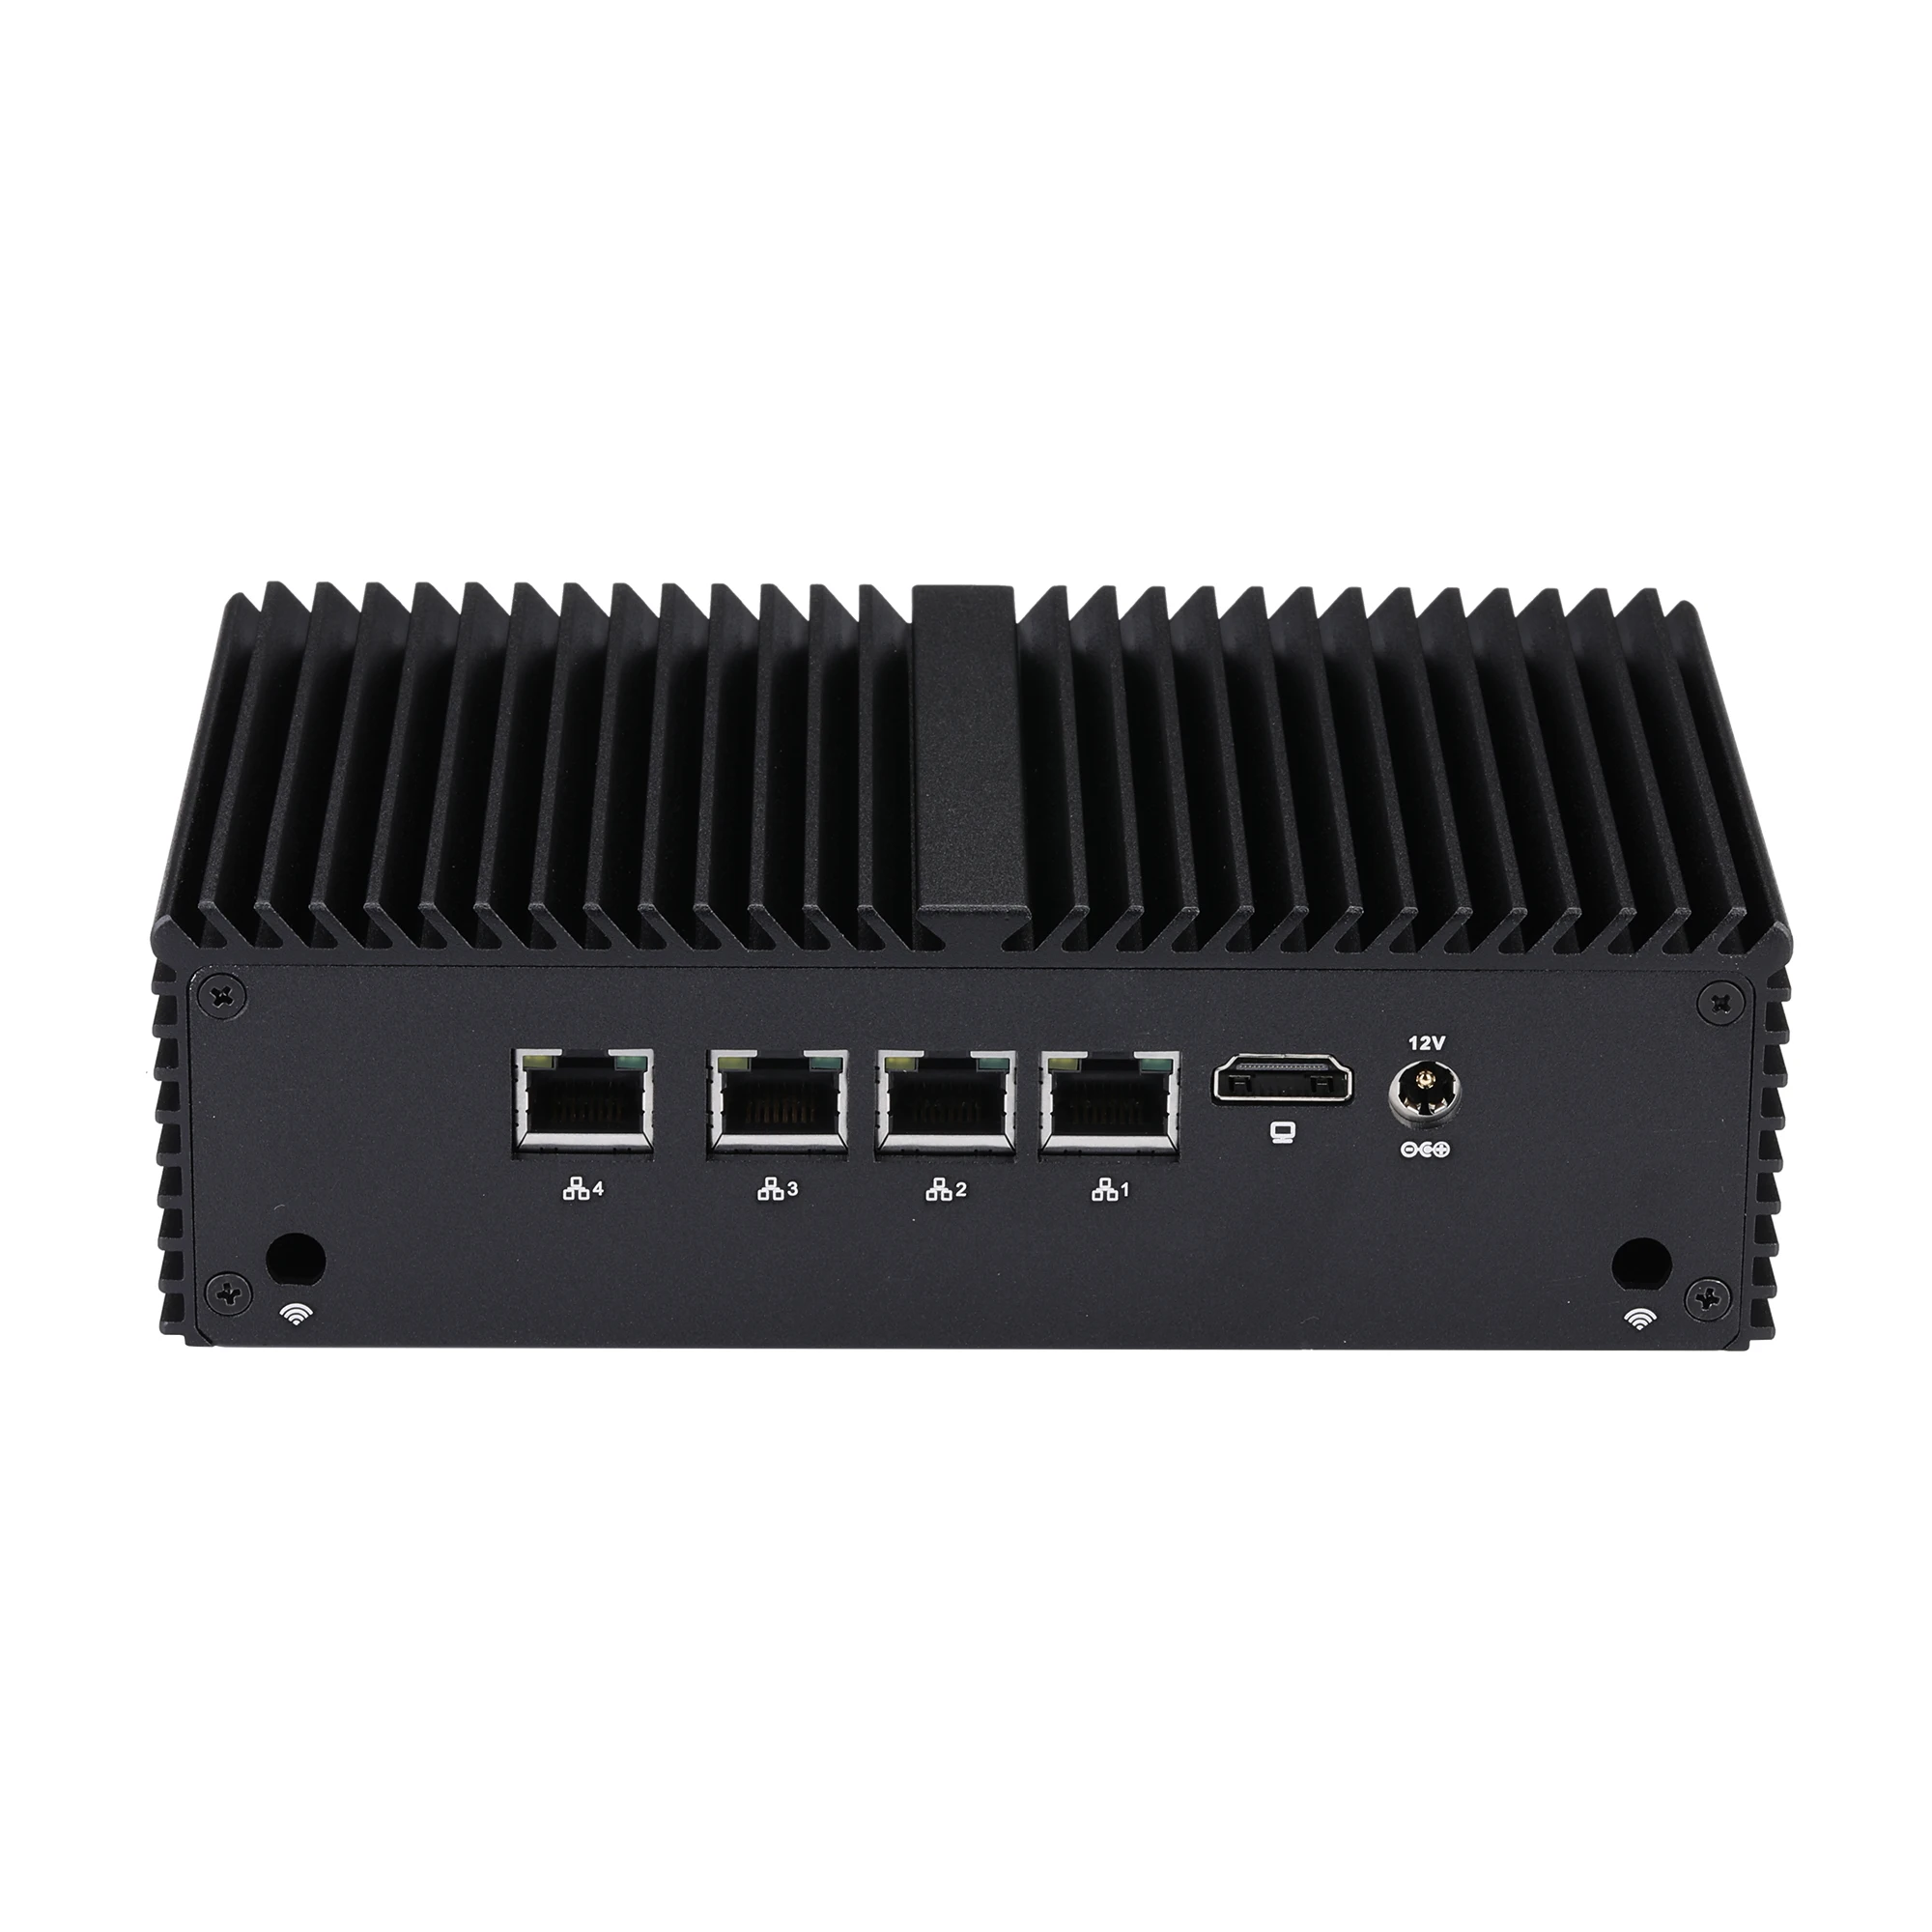 QOTOM Mini PC Firewall Micro Appliance Q790G4 SOC Processor J6412 Quad Core 10W -4 Gigabit LAN Ports